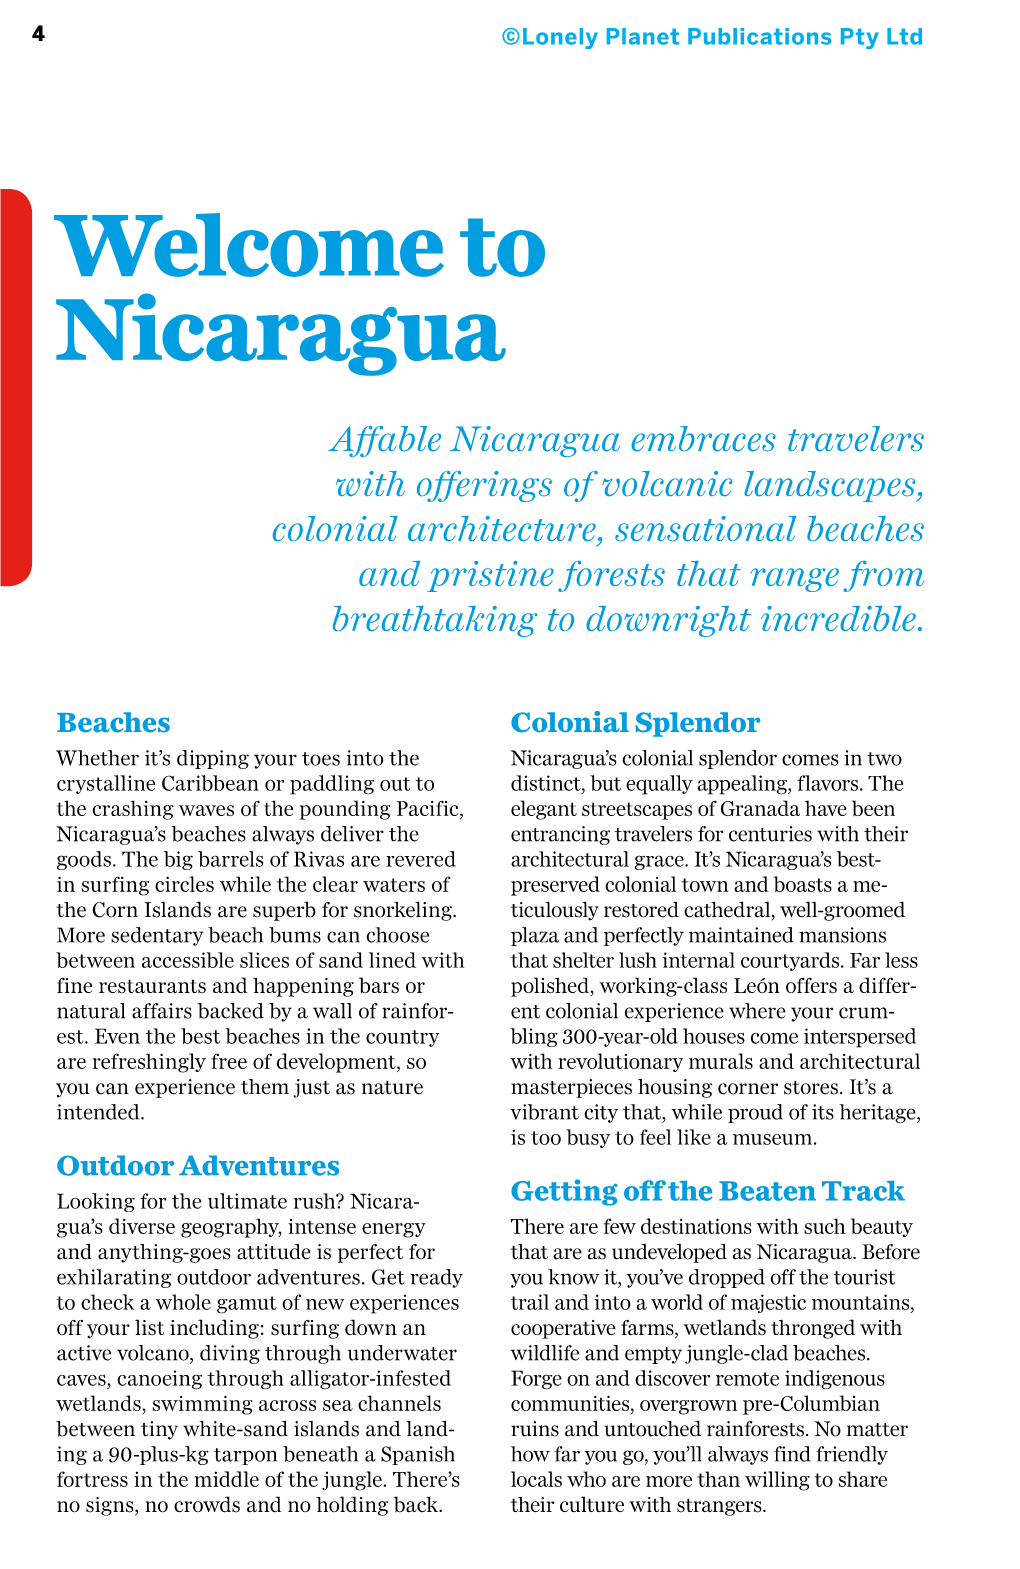 Welcome to Nicaragua